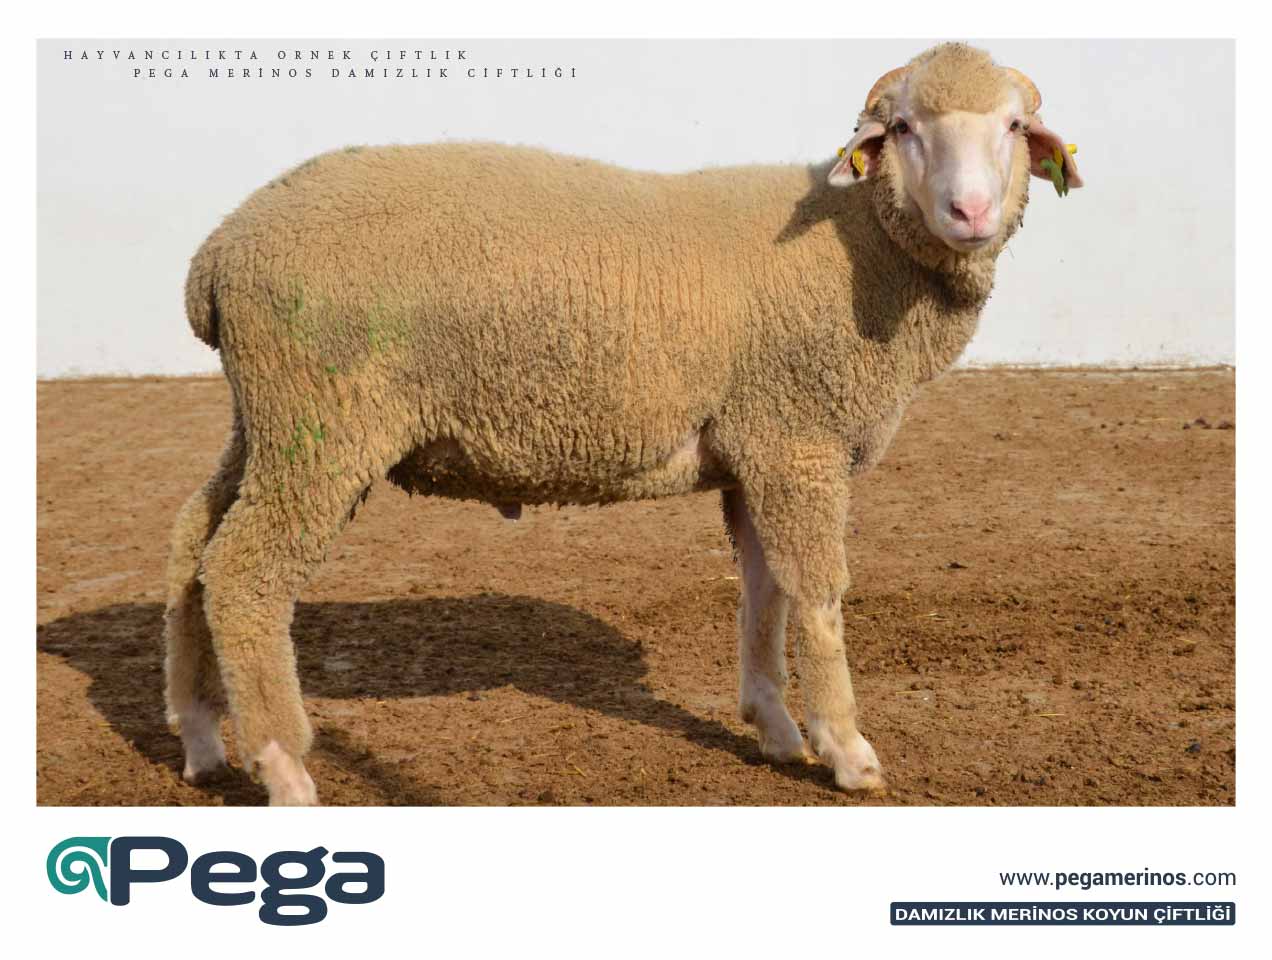 Pega25